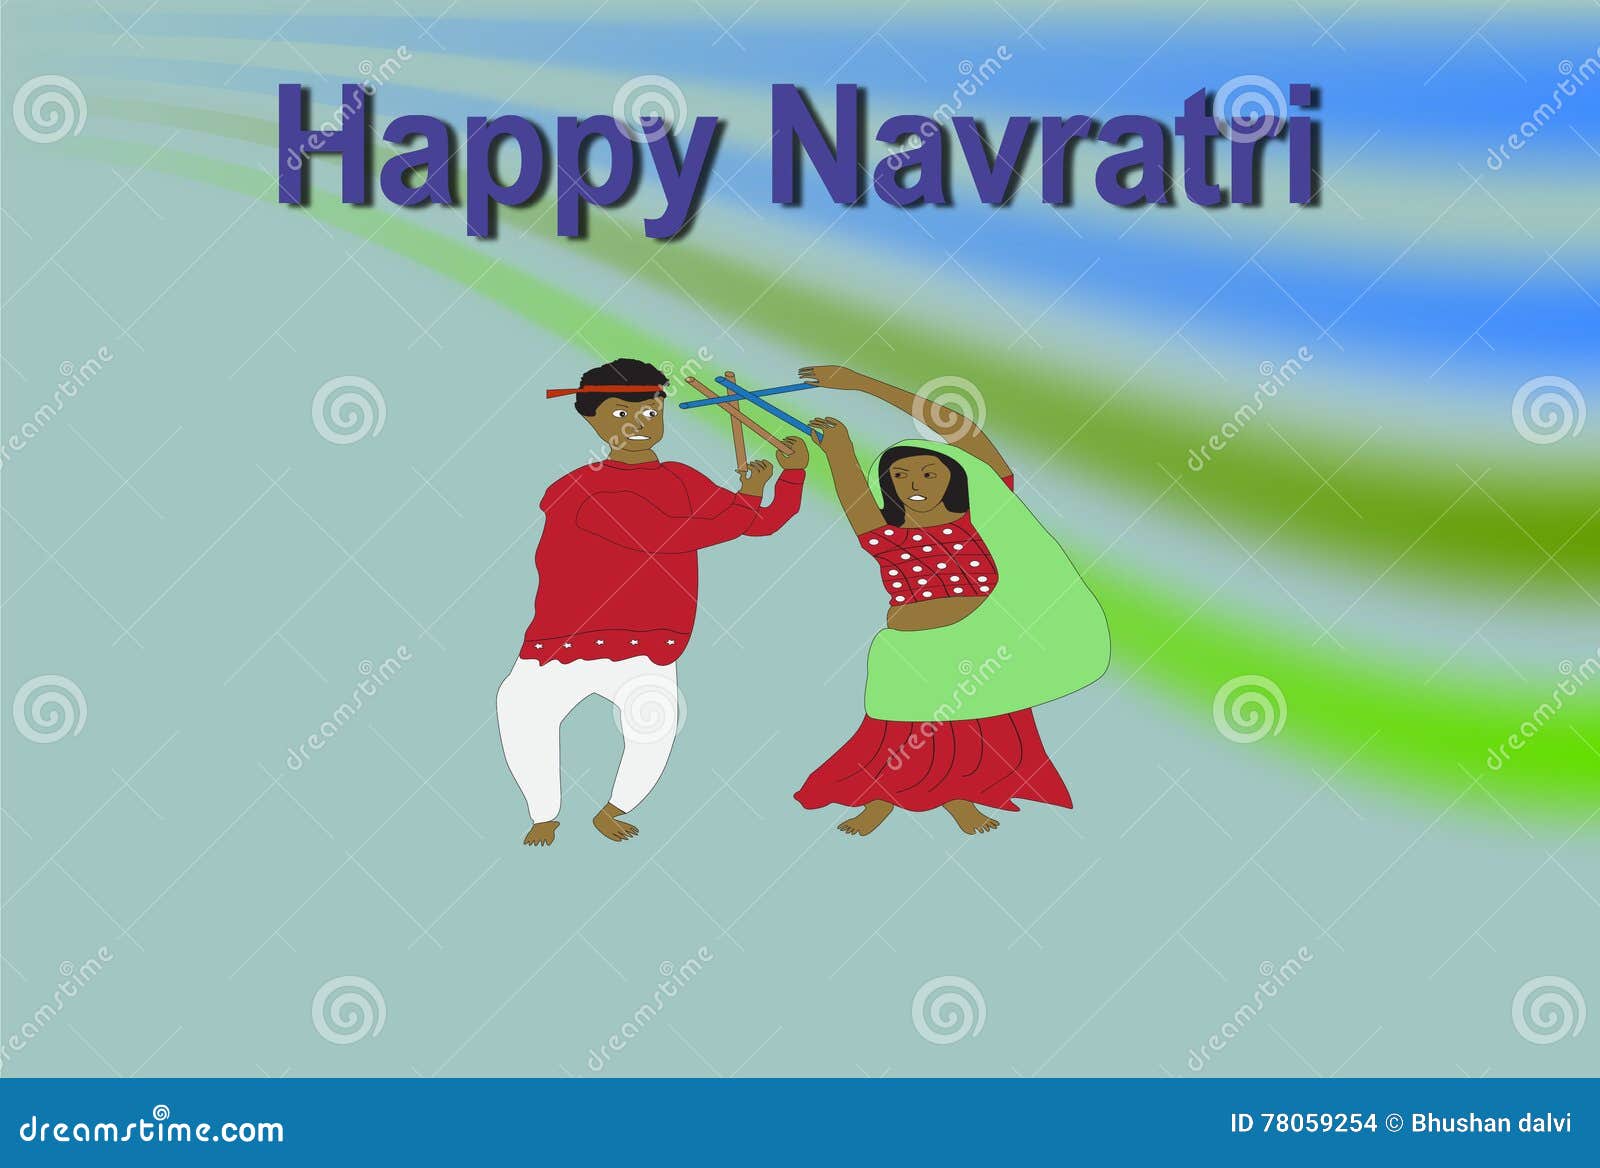 Navratri wallpaper stock illustration. Illustration of wallpaper - 78059254